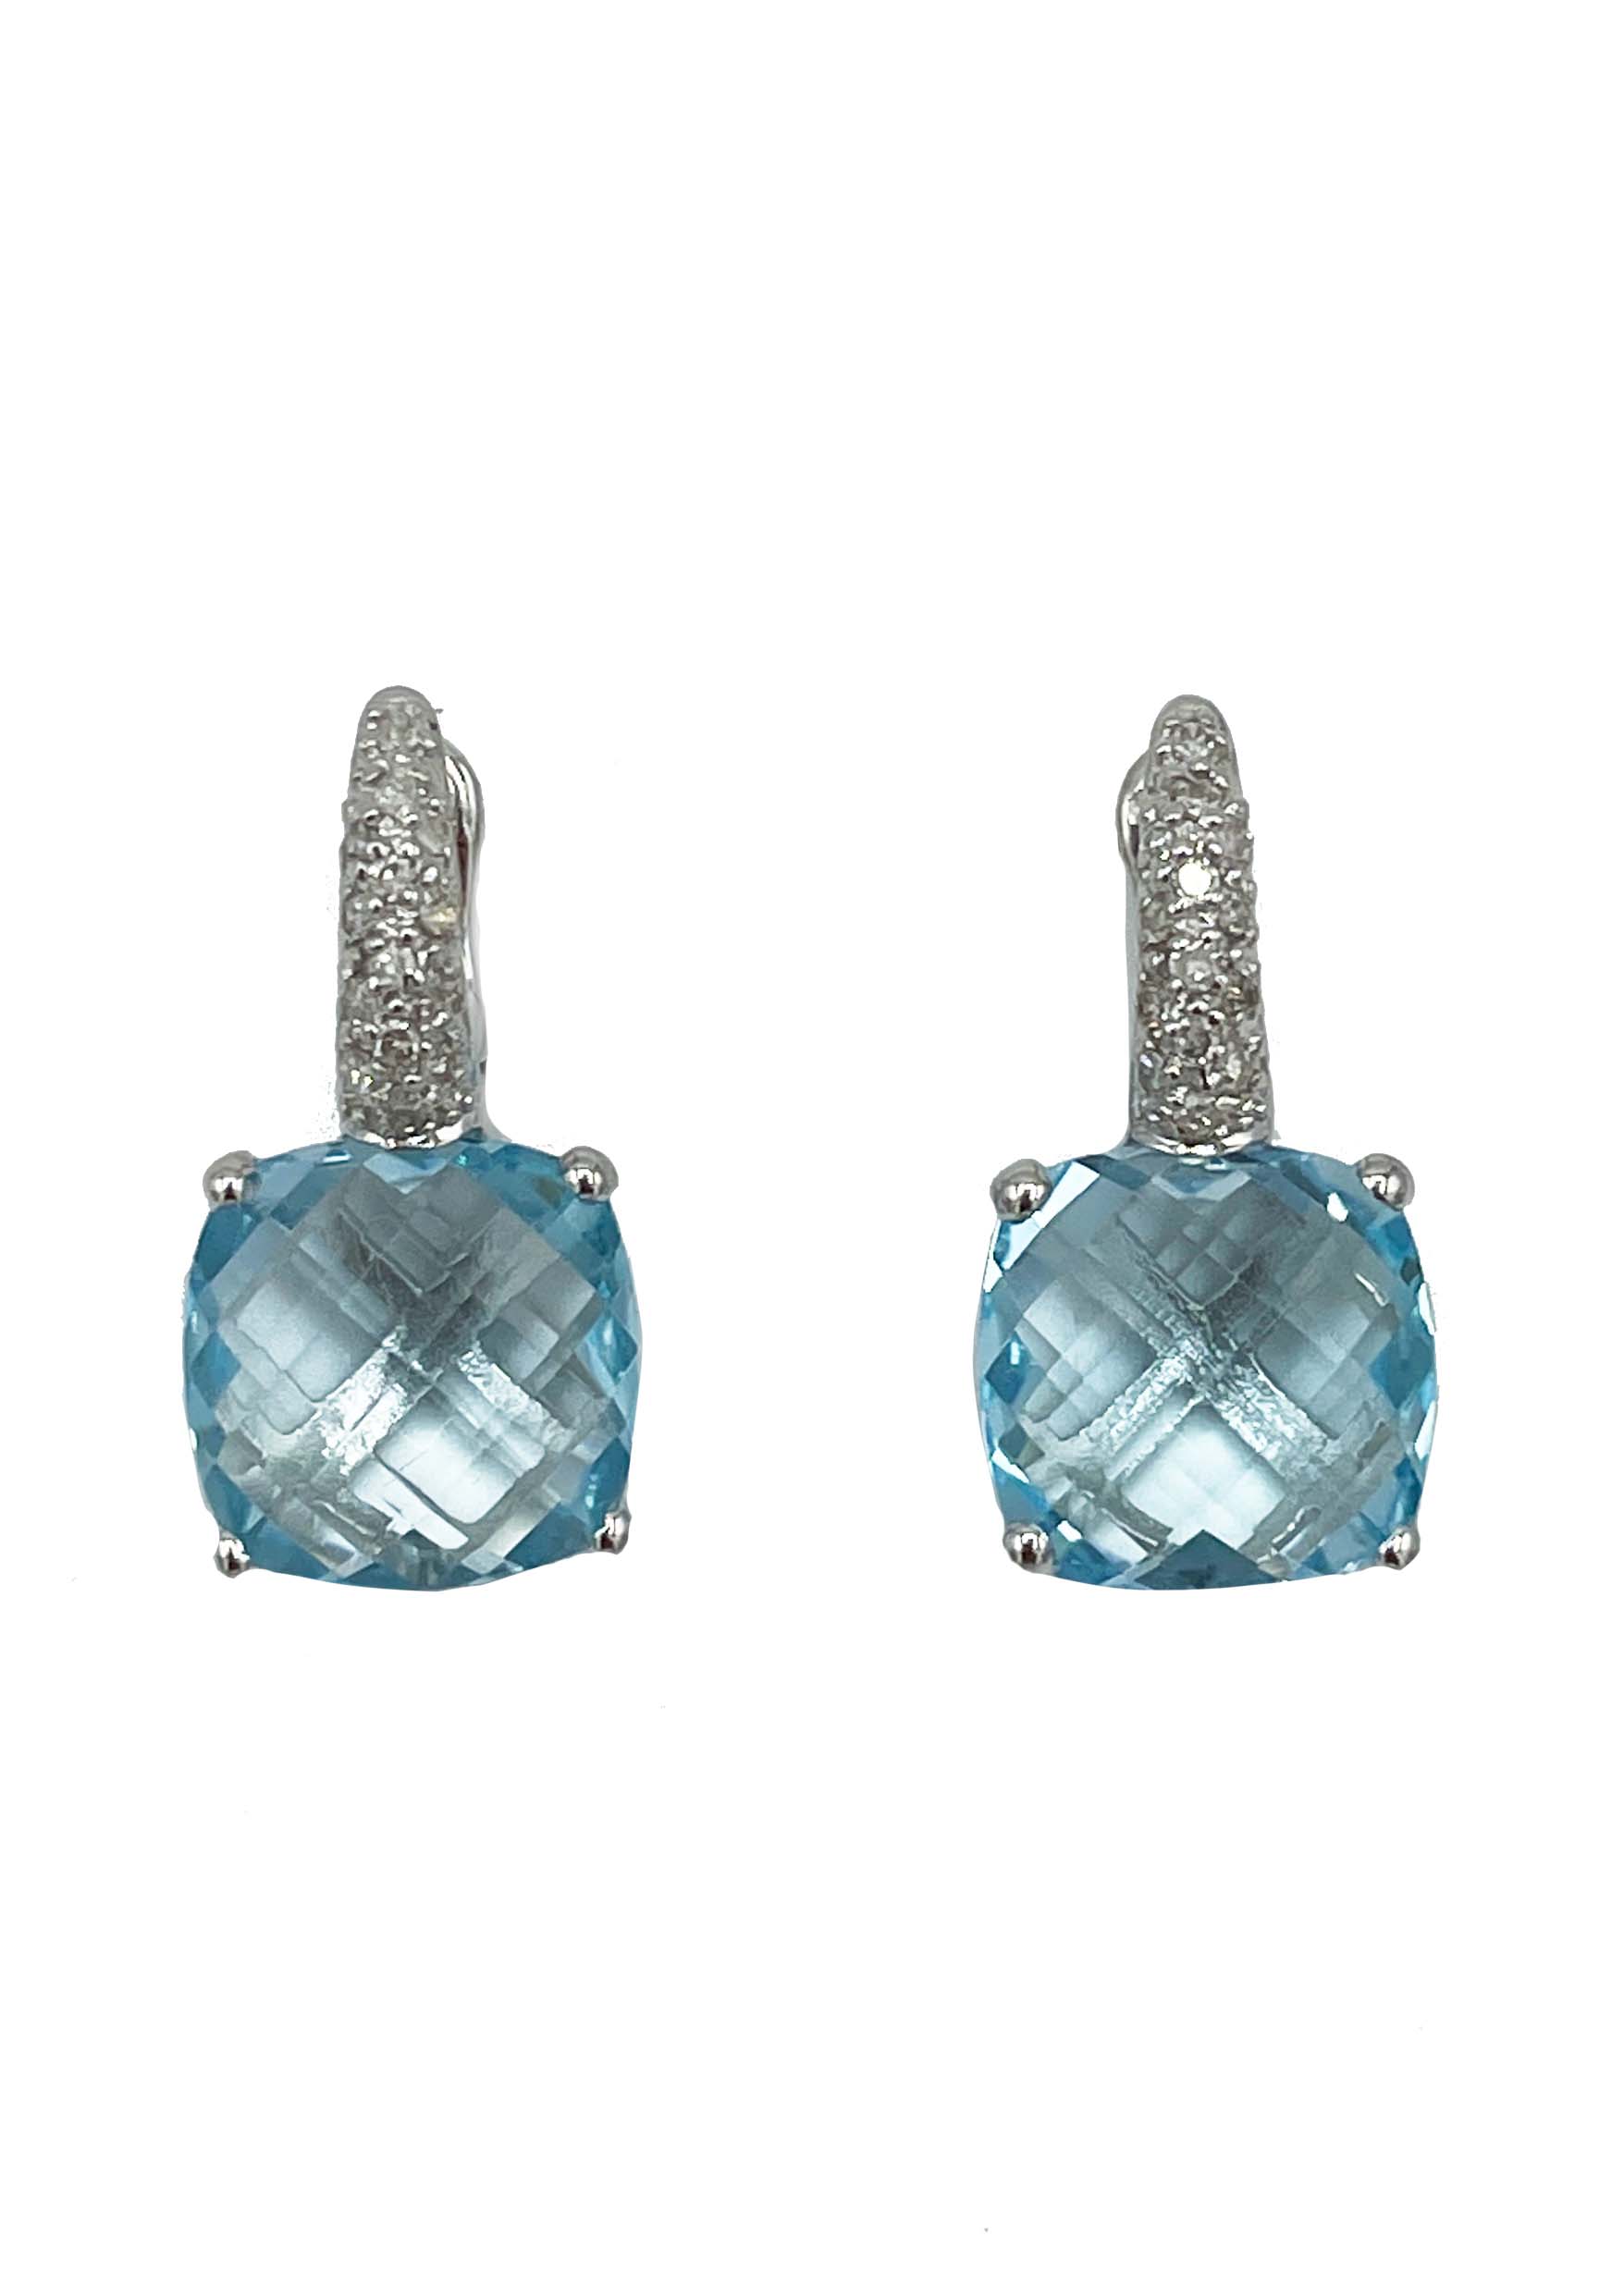 18k White Gold Blue Topaz & Diamond Earrings Image